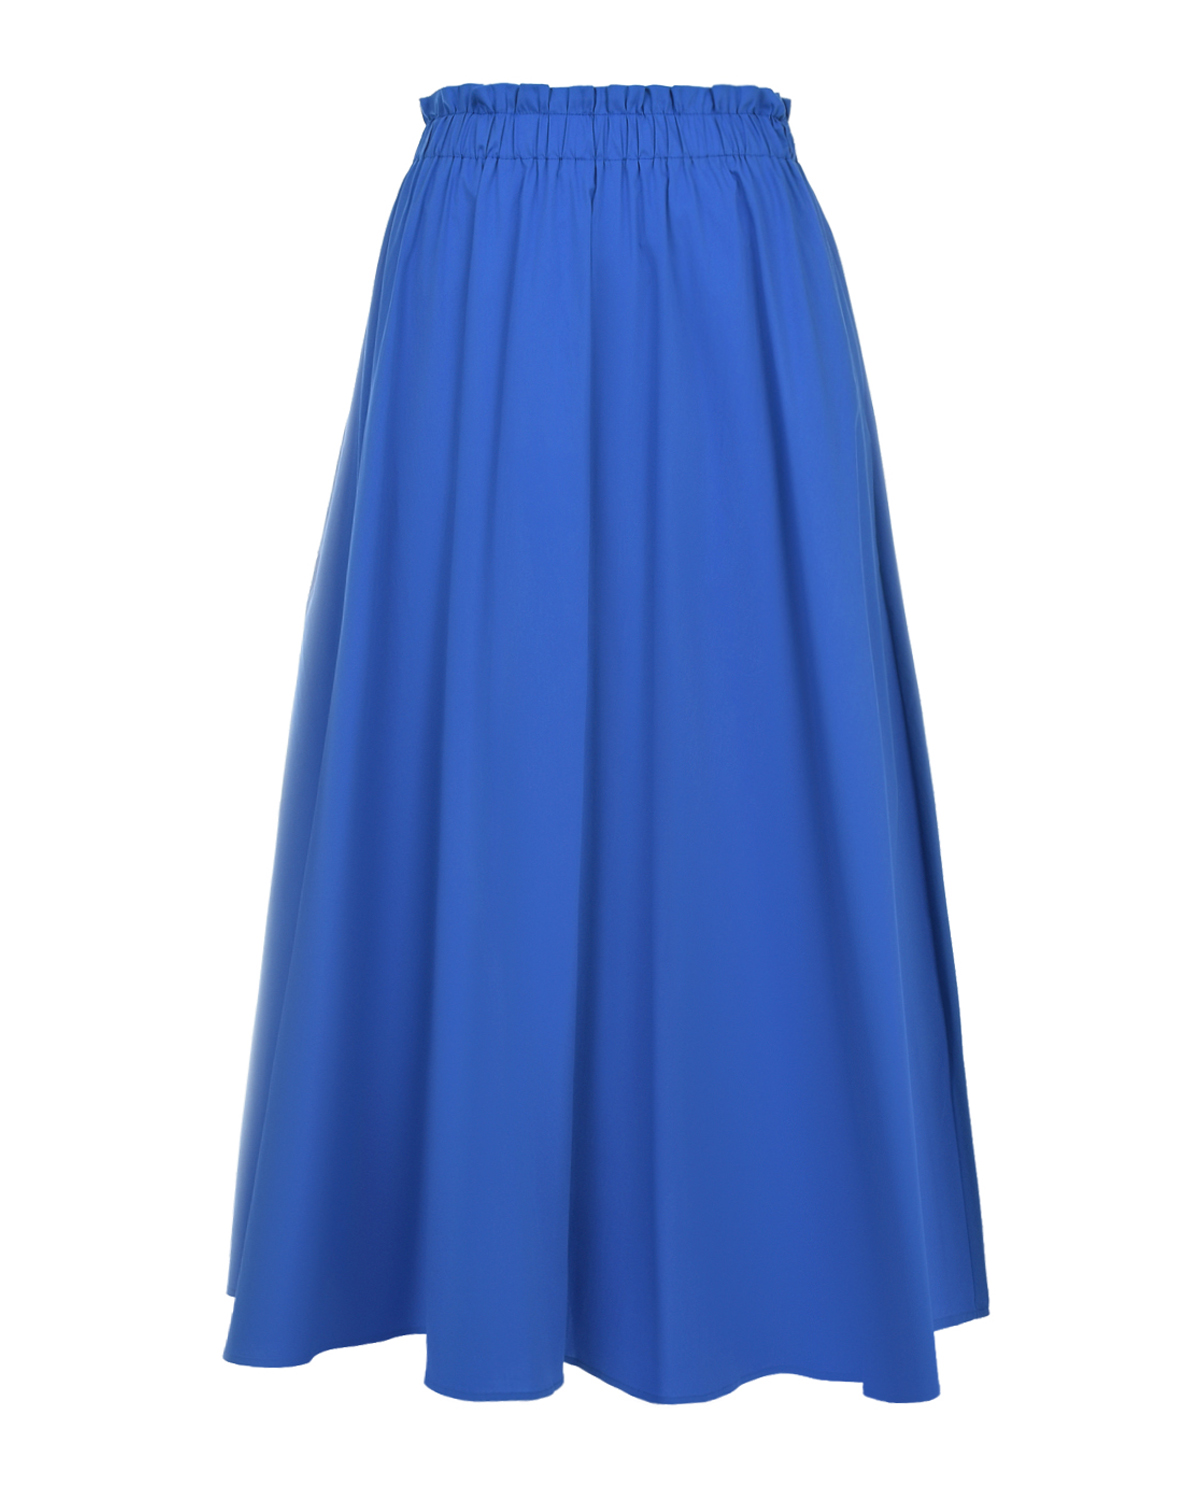 Синяя юбка с поясом на резинке Pietro Brunelli синяя юбка мини в складку с принтом в клетку для девочки gsk017549 14 164